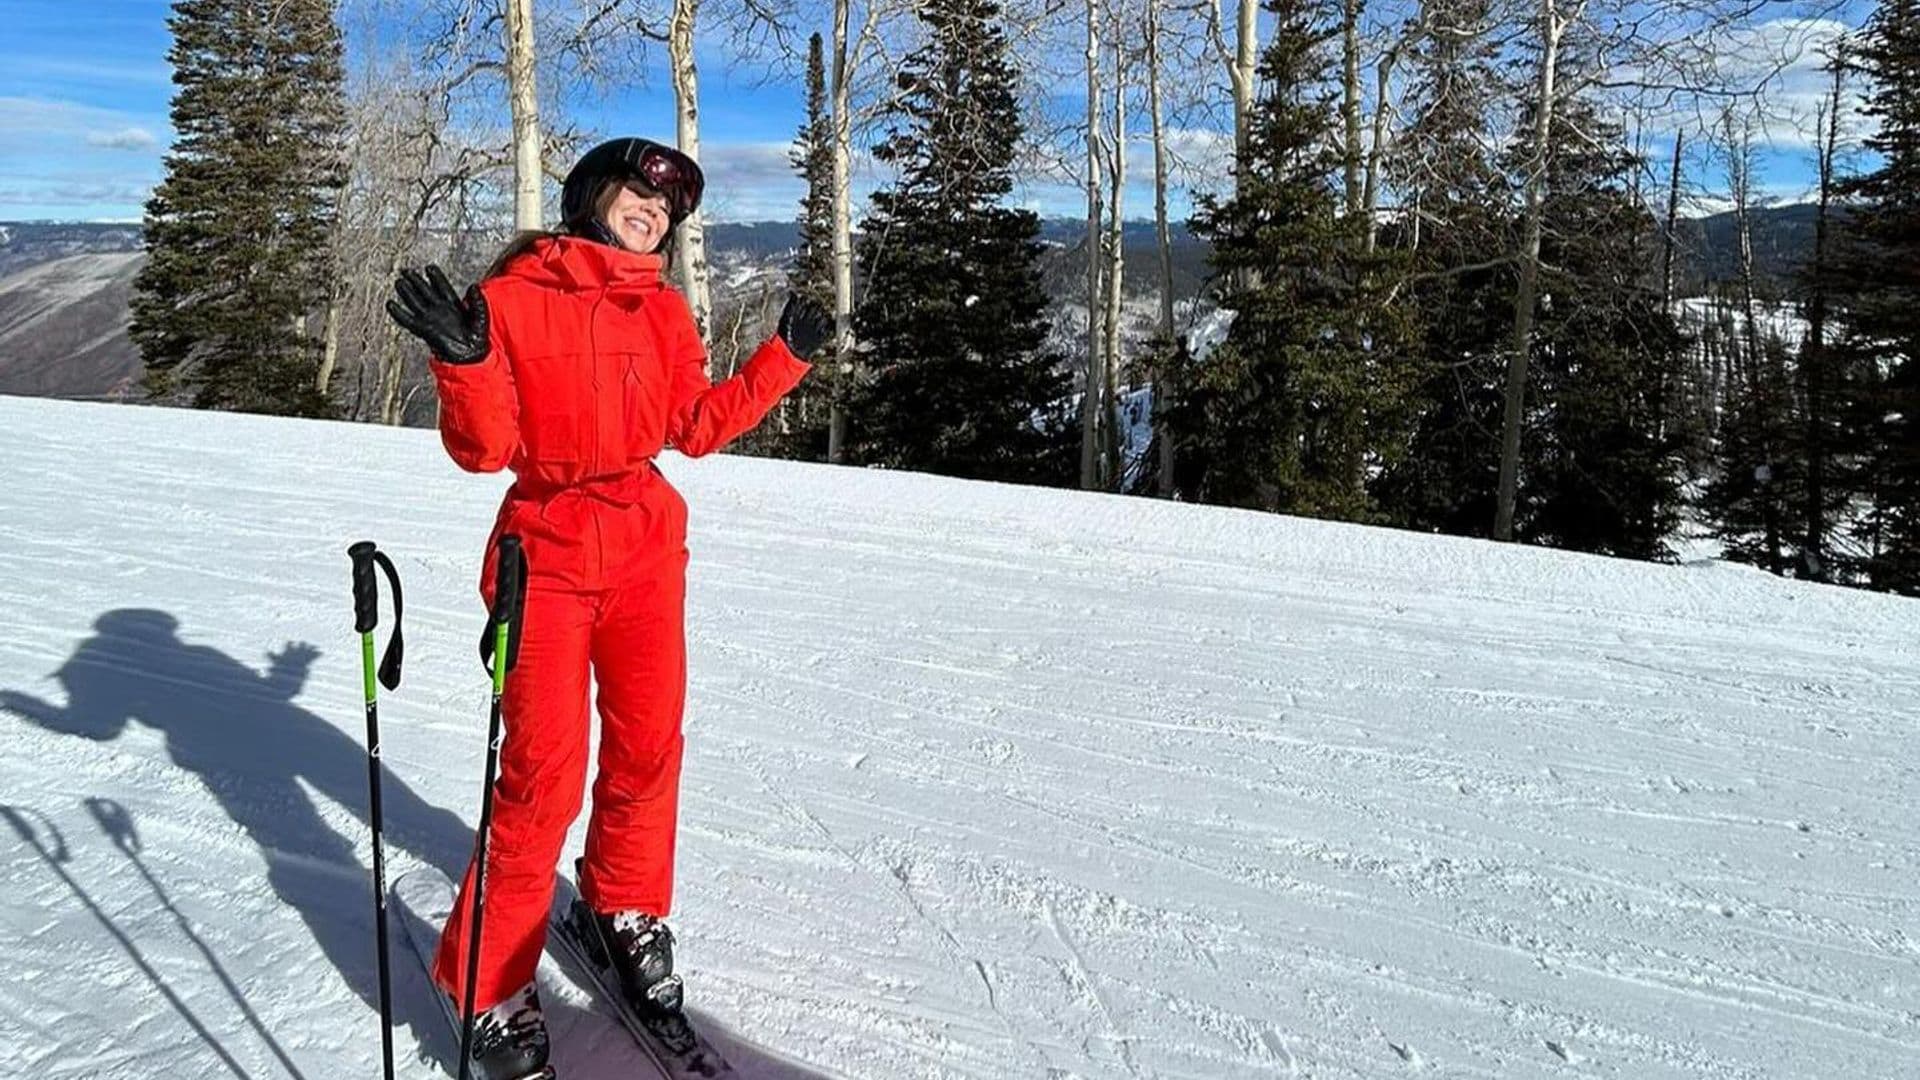 Camila Sodi comparte cómo se encuentra tras el accidente que sufrió esquiando